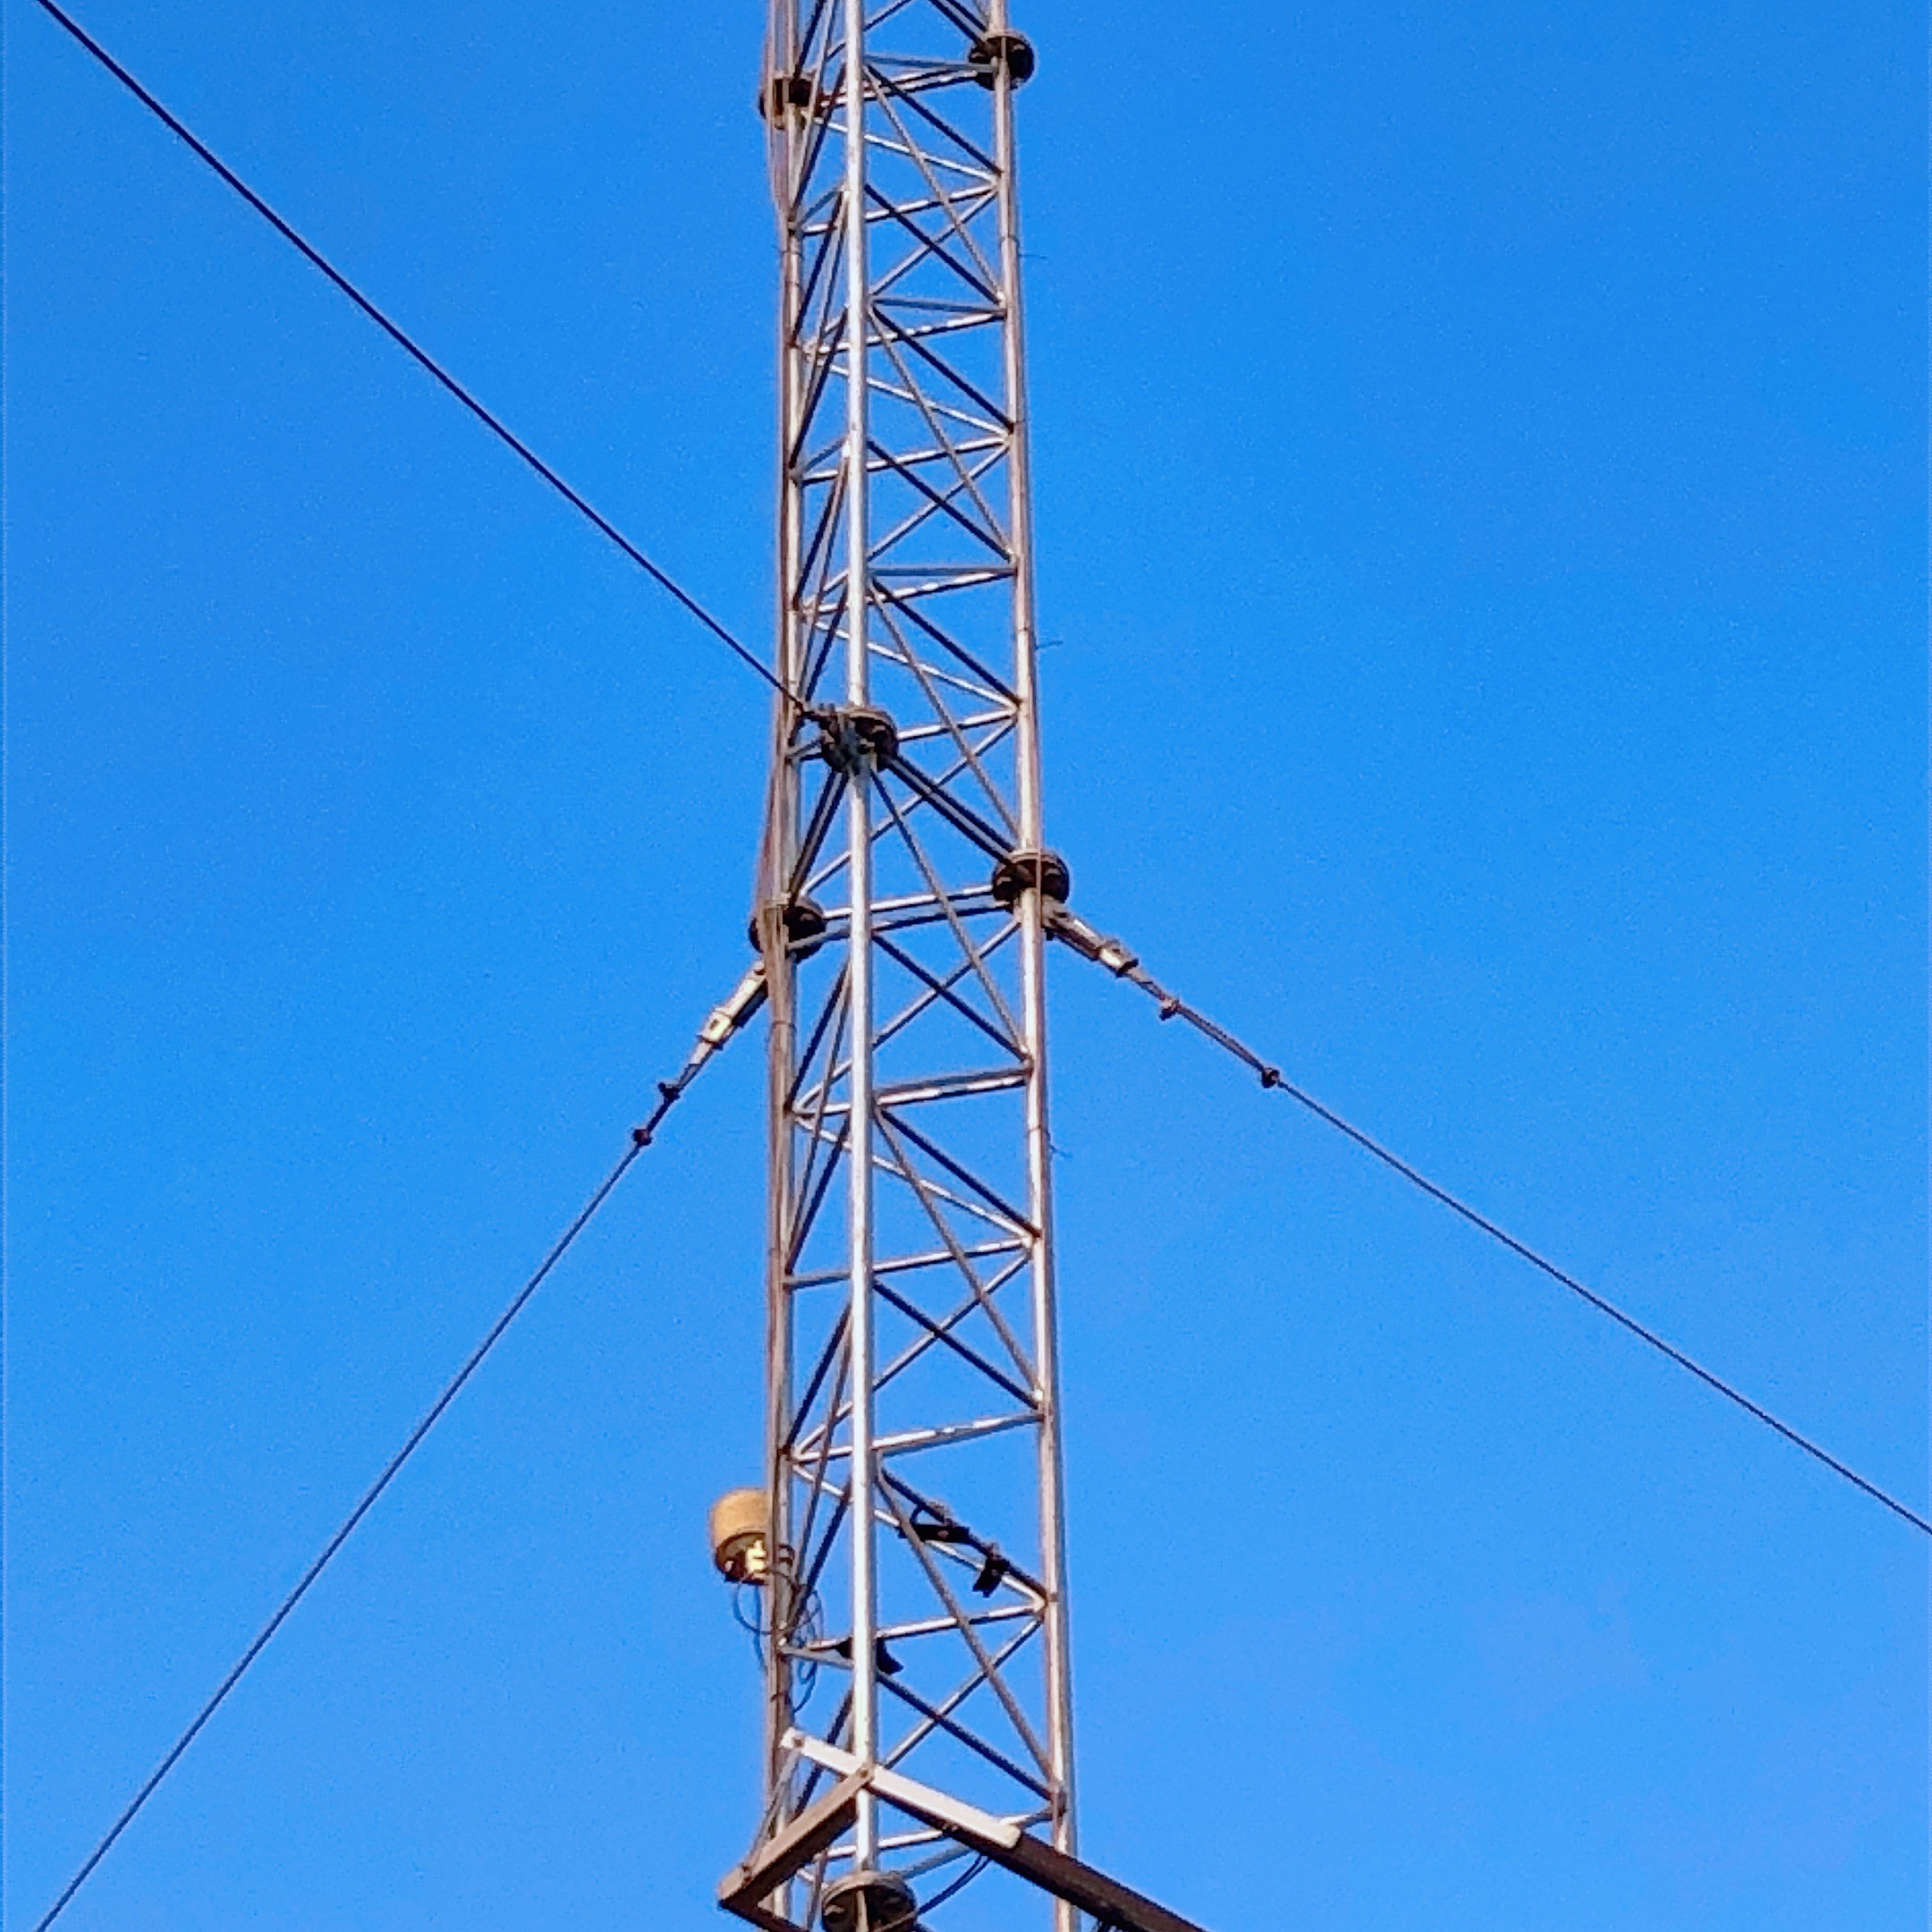 स्टील बार त्रिकोणीय रेडियो टेलीकॉम गयर्ड वायर टॉवर